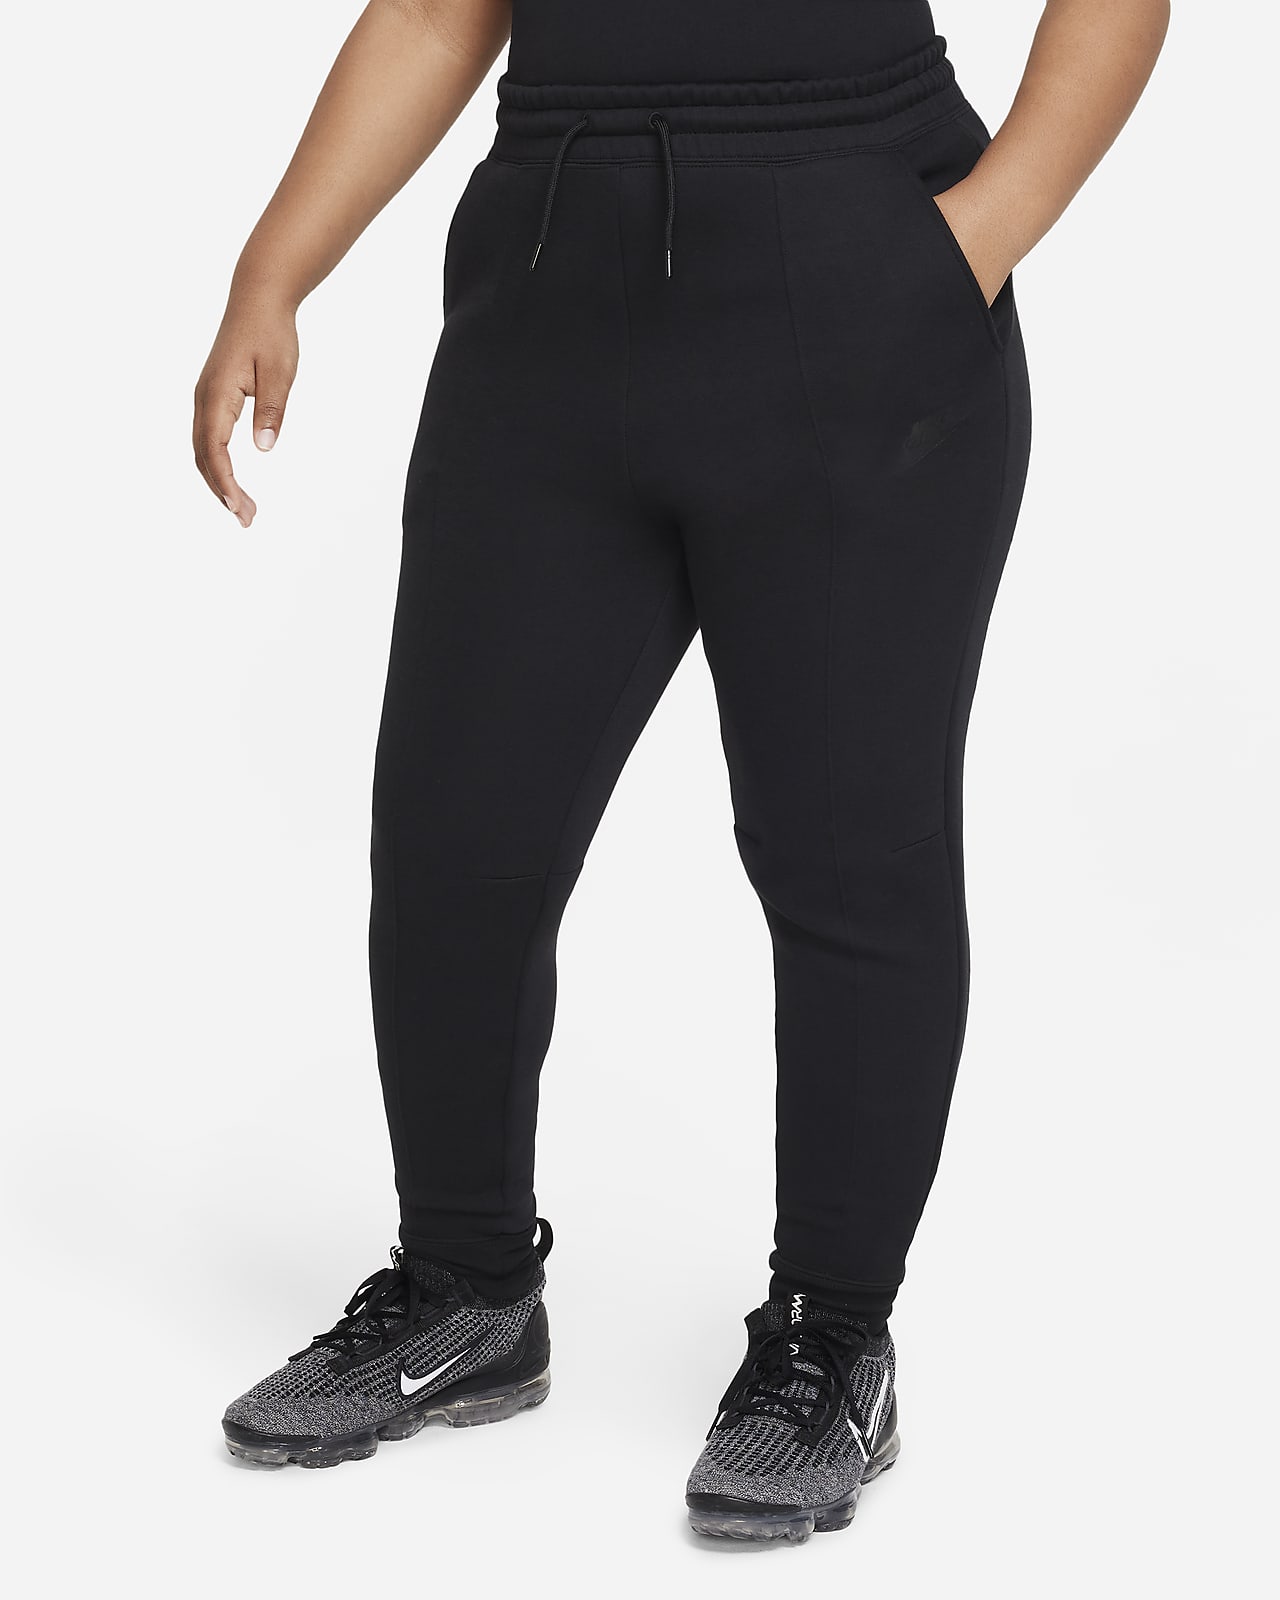 Běžecké kalhoty Nike Sportswear Tech Fleece pro větší děti (dívky) (rozšířená velikost)